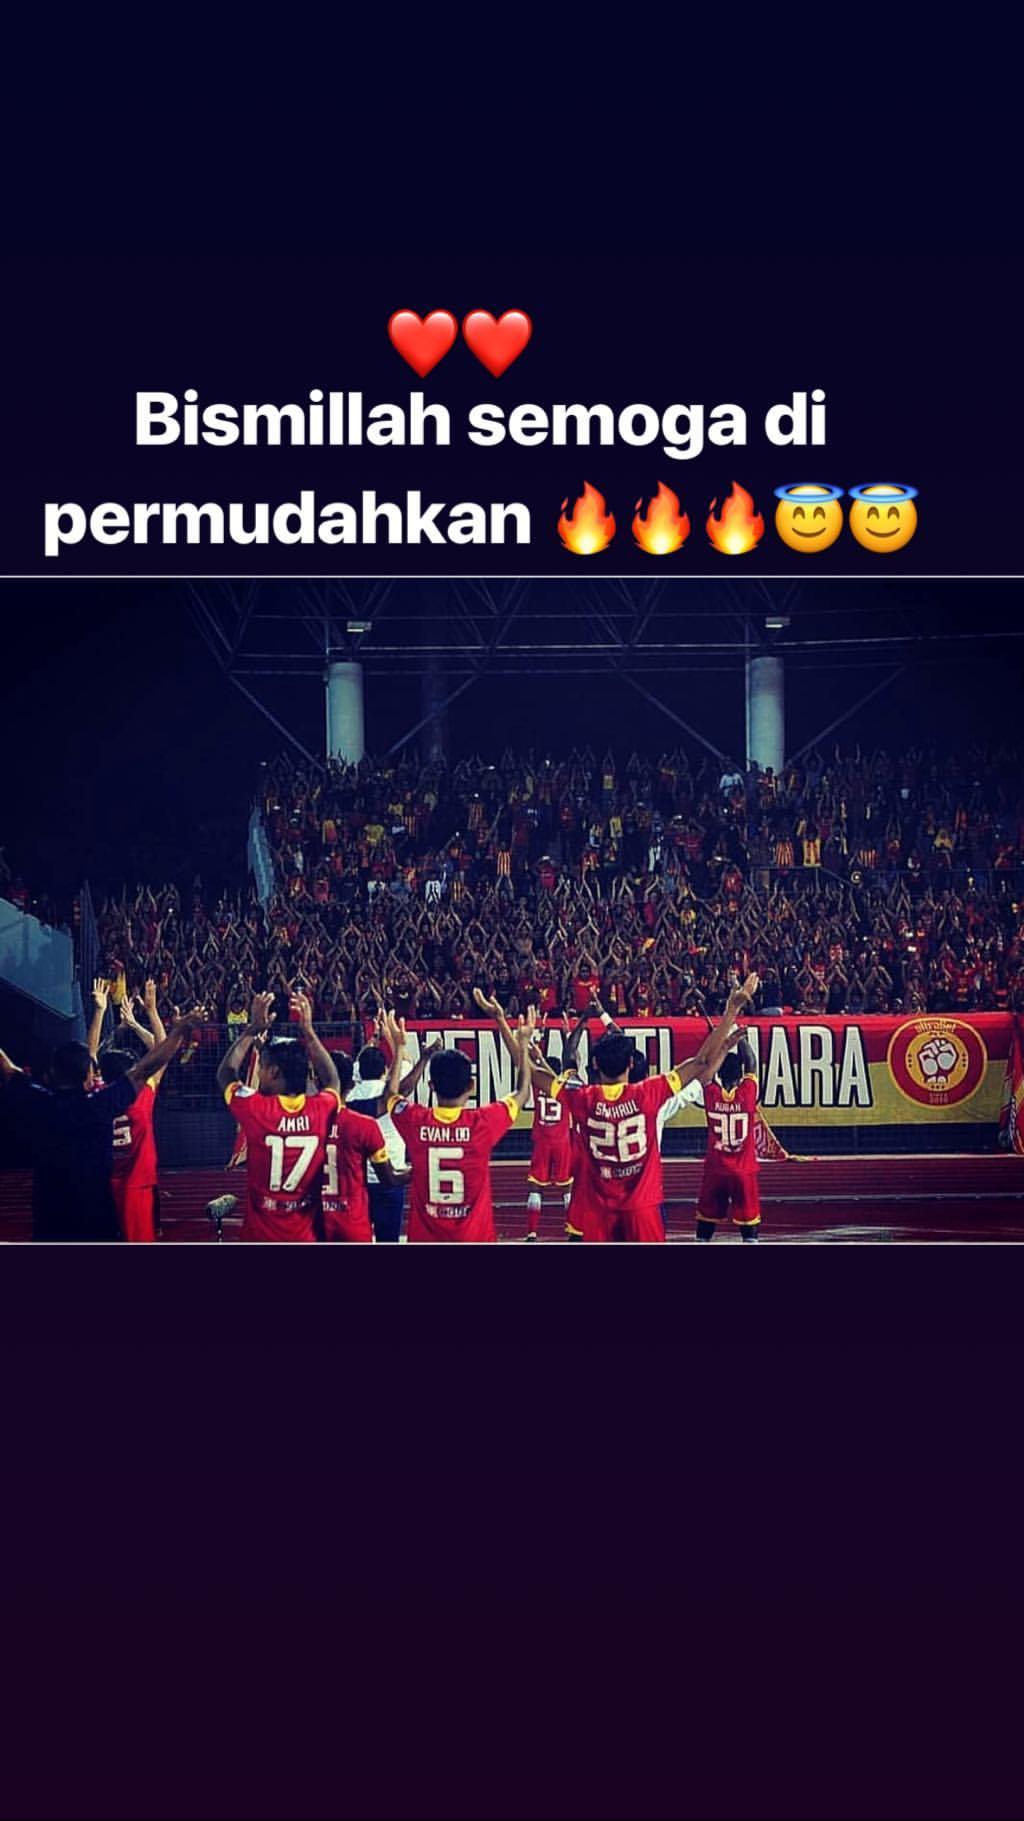 Evan Dimas yang tengah membela Timnas Indonesia mendoakan Selangor FA meraih kemenangan. Copyright: evhandimas/Instagram